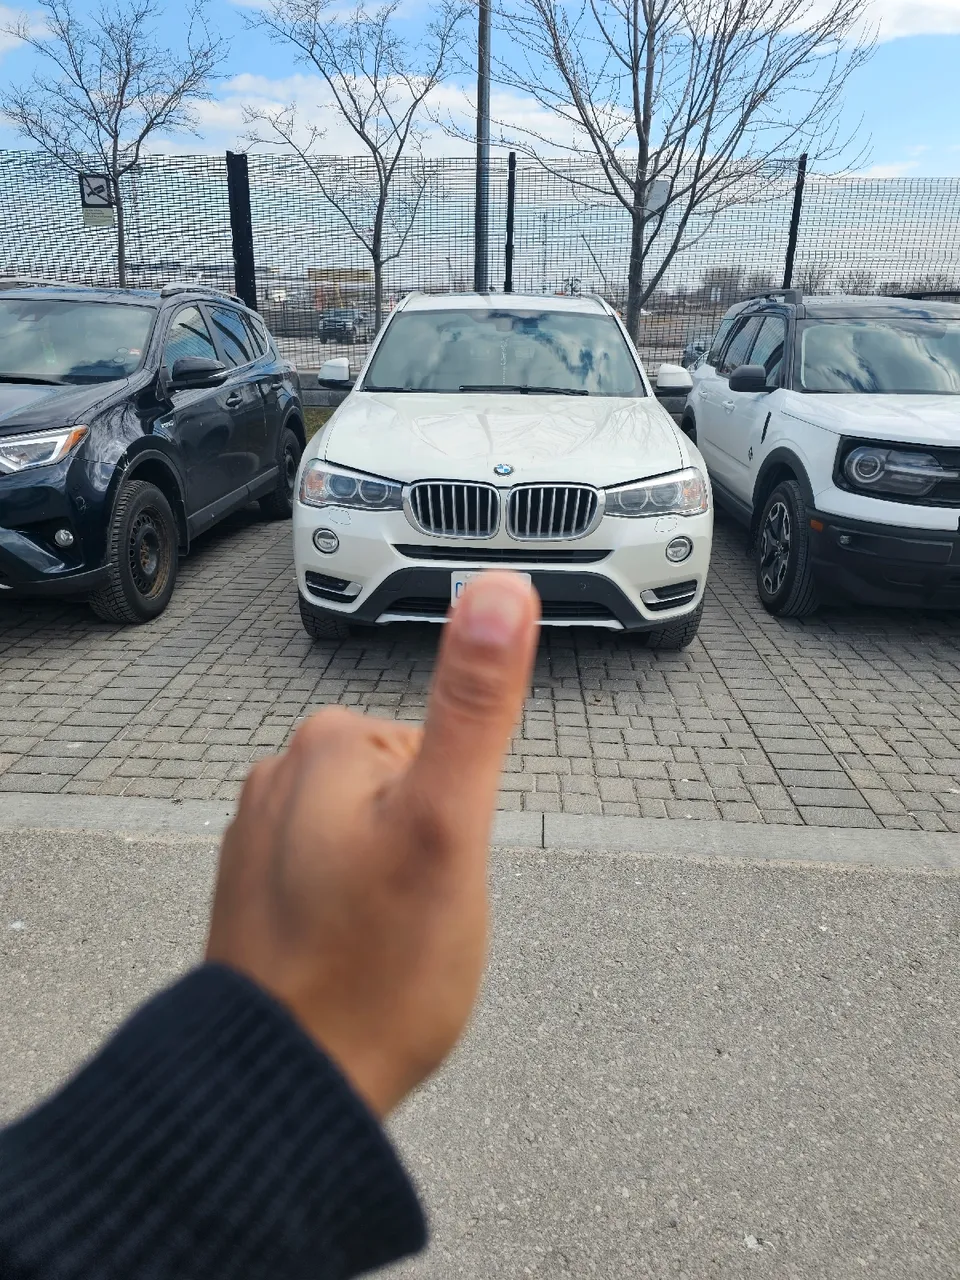 2016 BMW X3